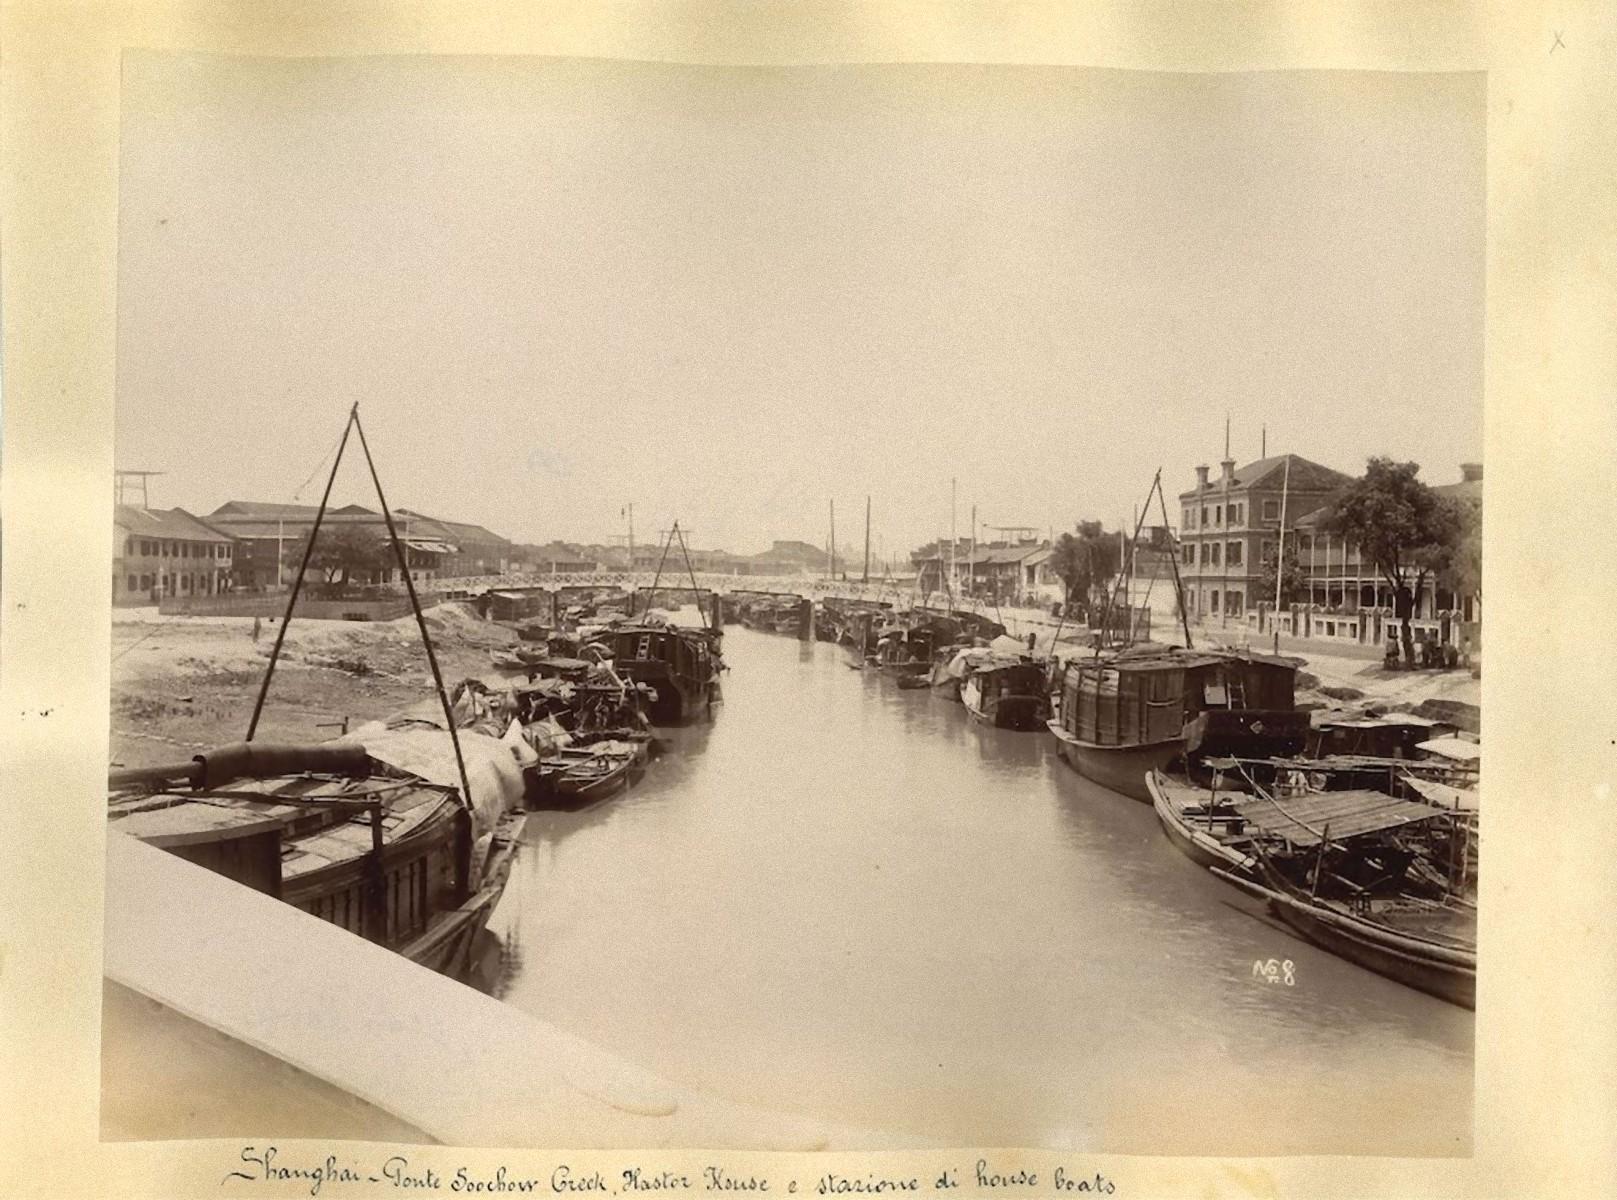 Unknown Landscape Photograph - Ancient Views of Shanghai - Albumen Prints - 1890s